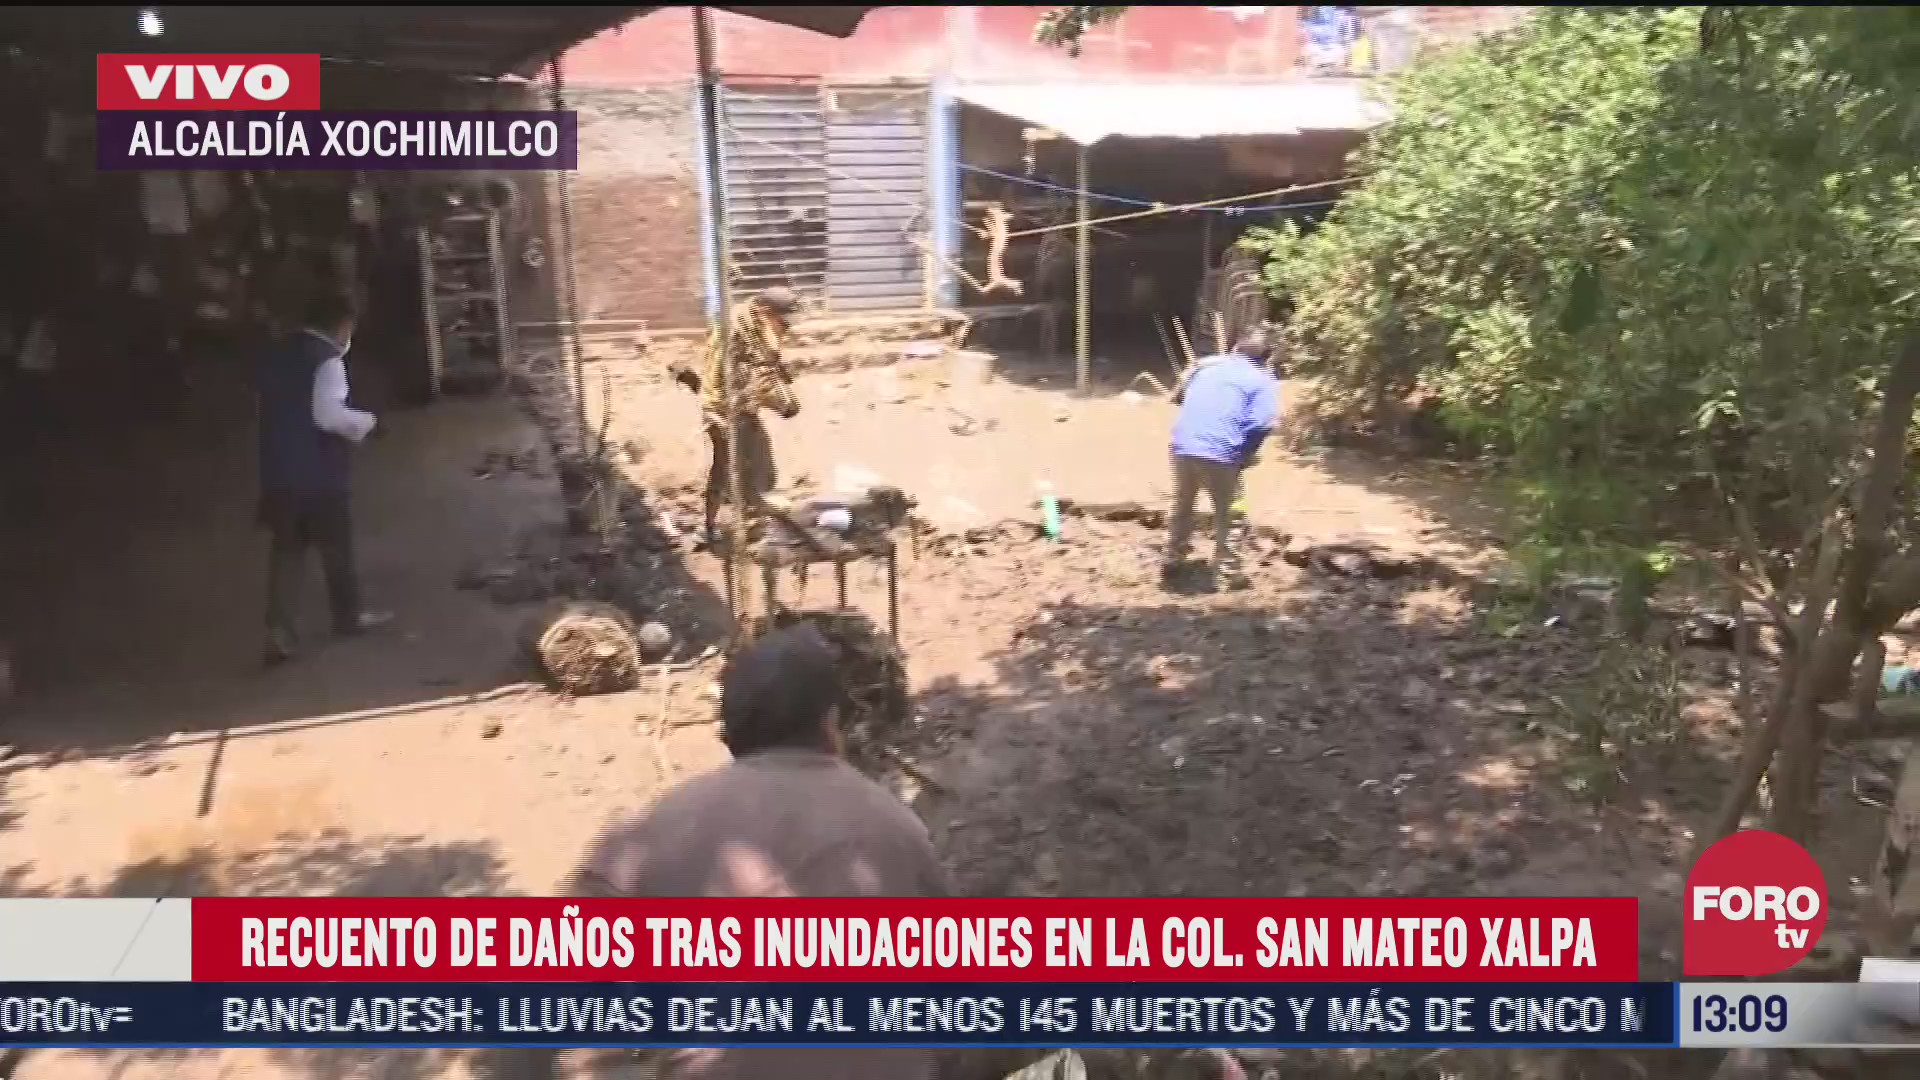 recuento de danos tras inundaciones en colonia san mateo xalpa xochimilco